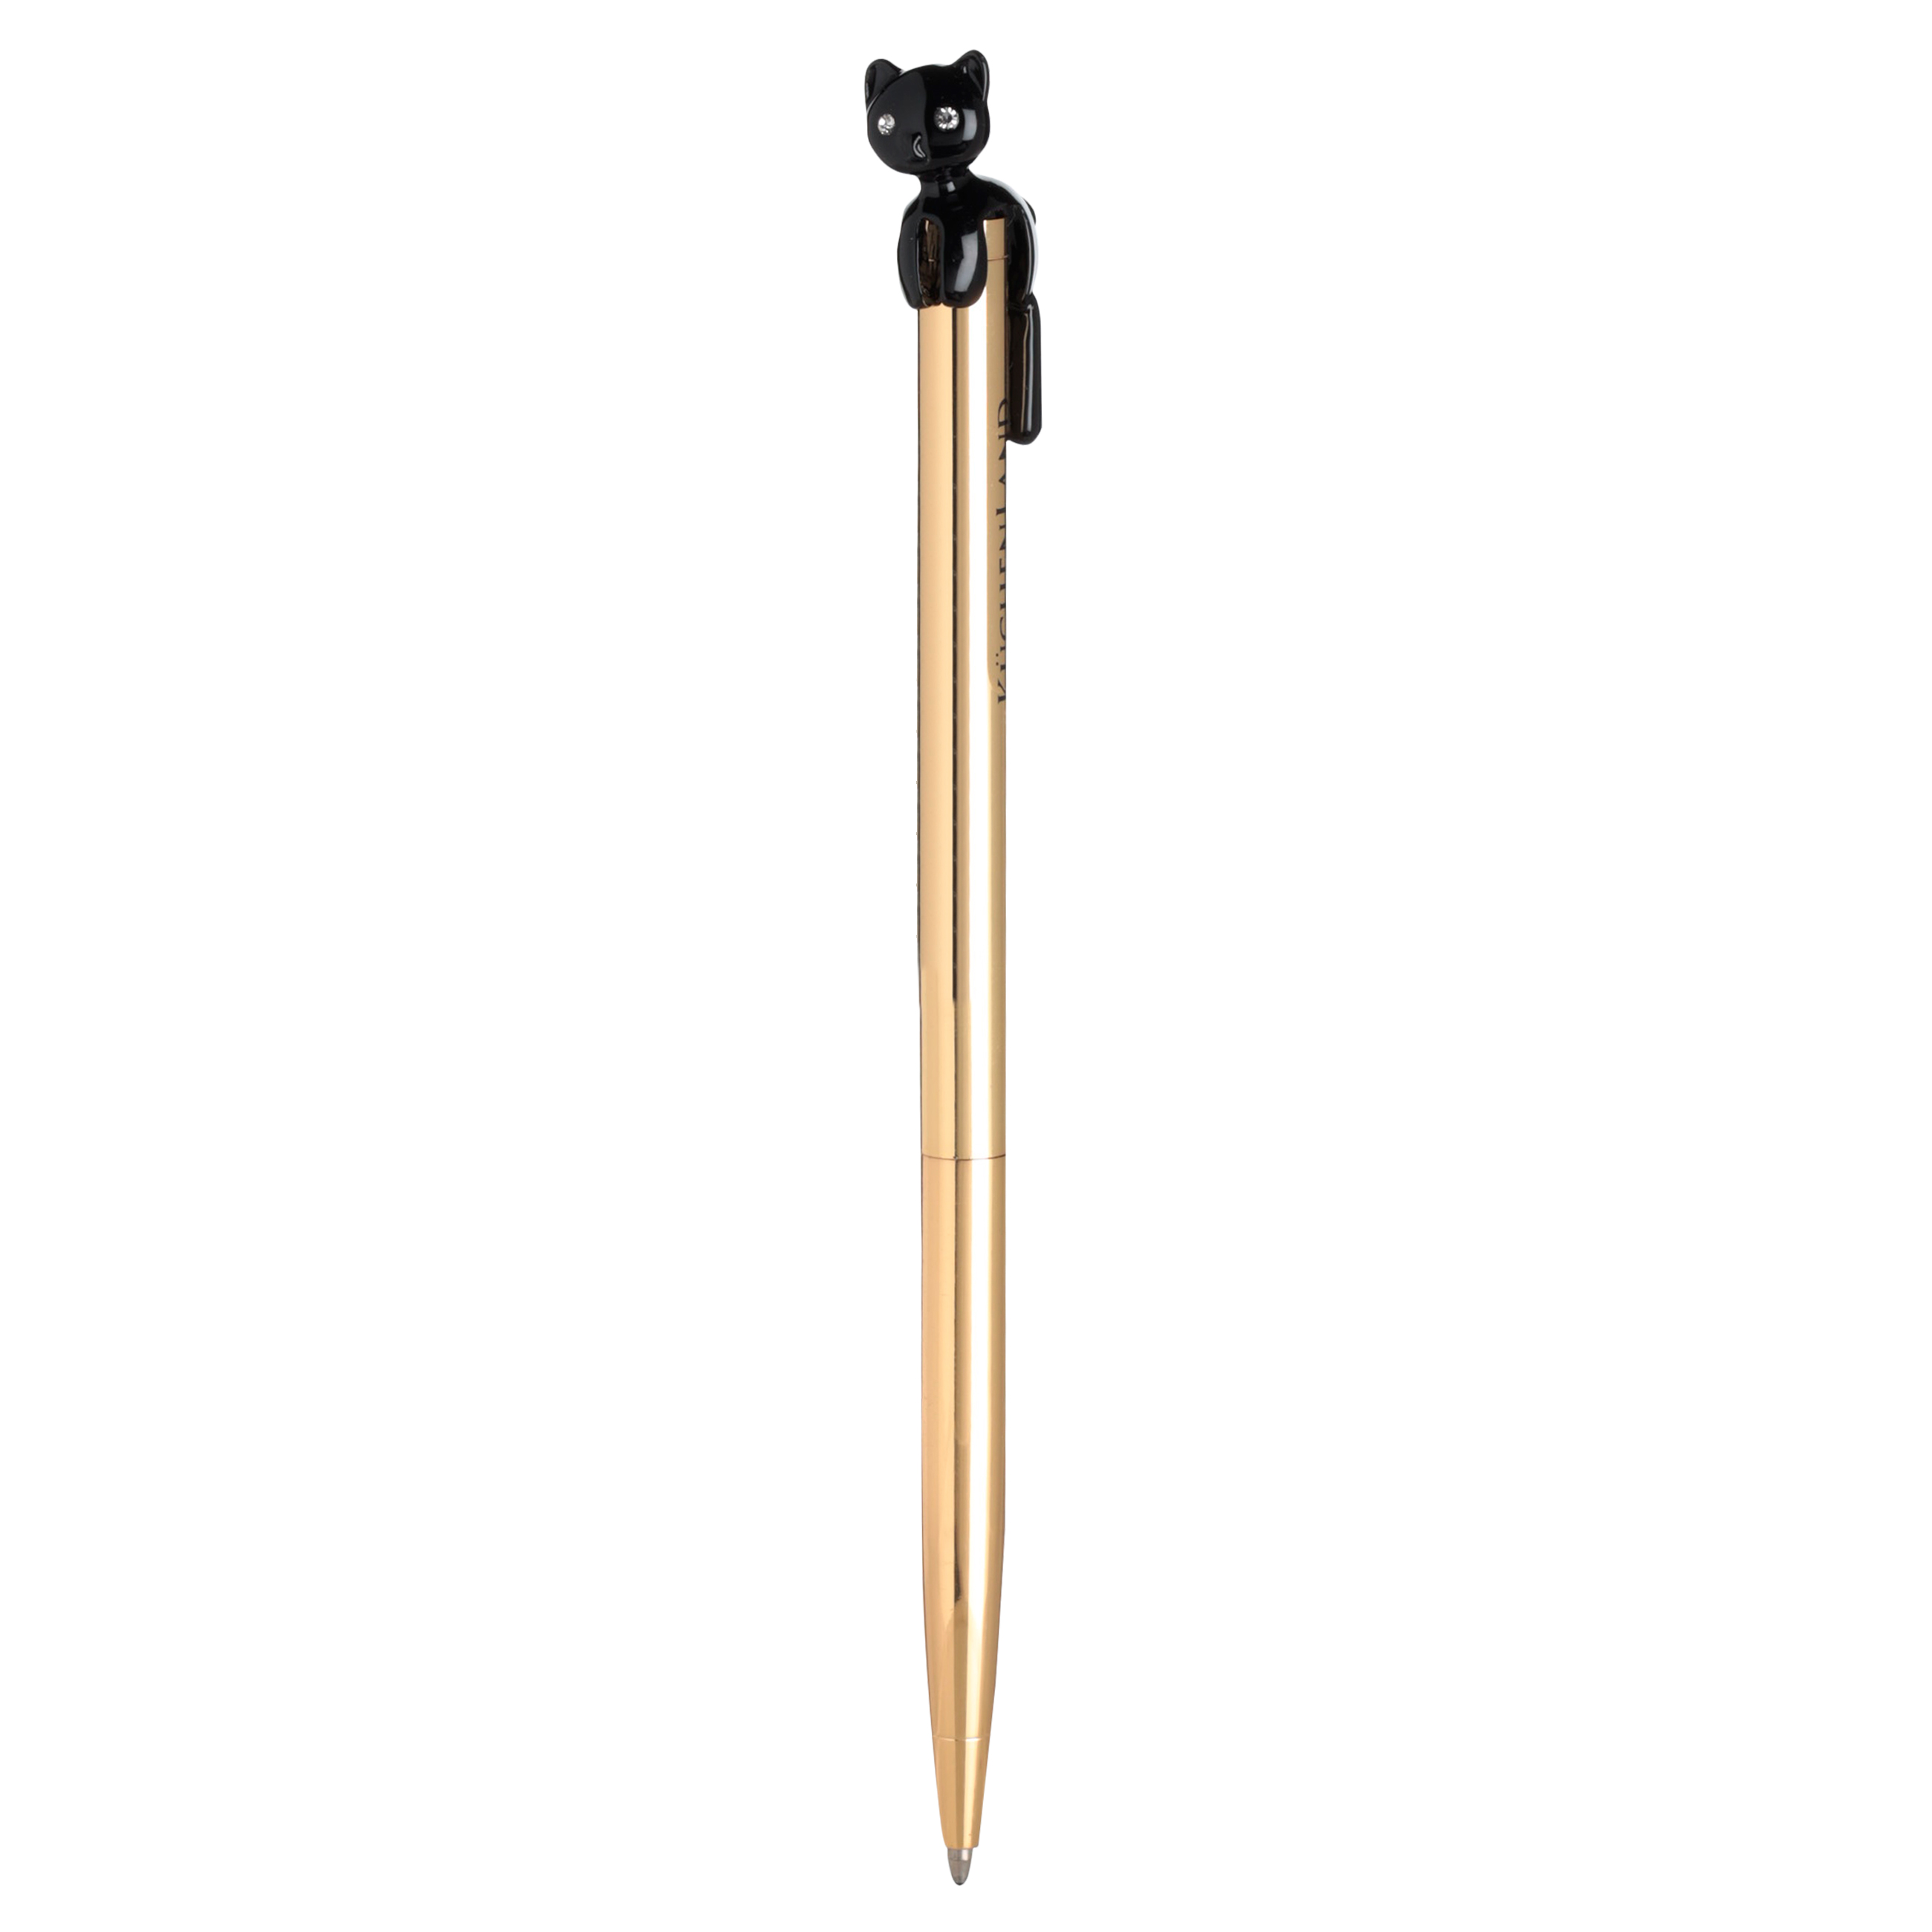 Ручка шариковая, 14 см, с фигуркой, металл, золотистая, Черный кот, Draw figure изображение № 2